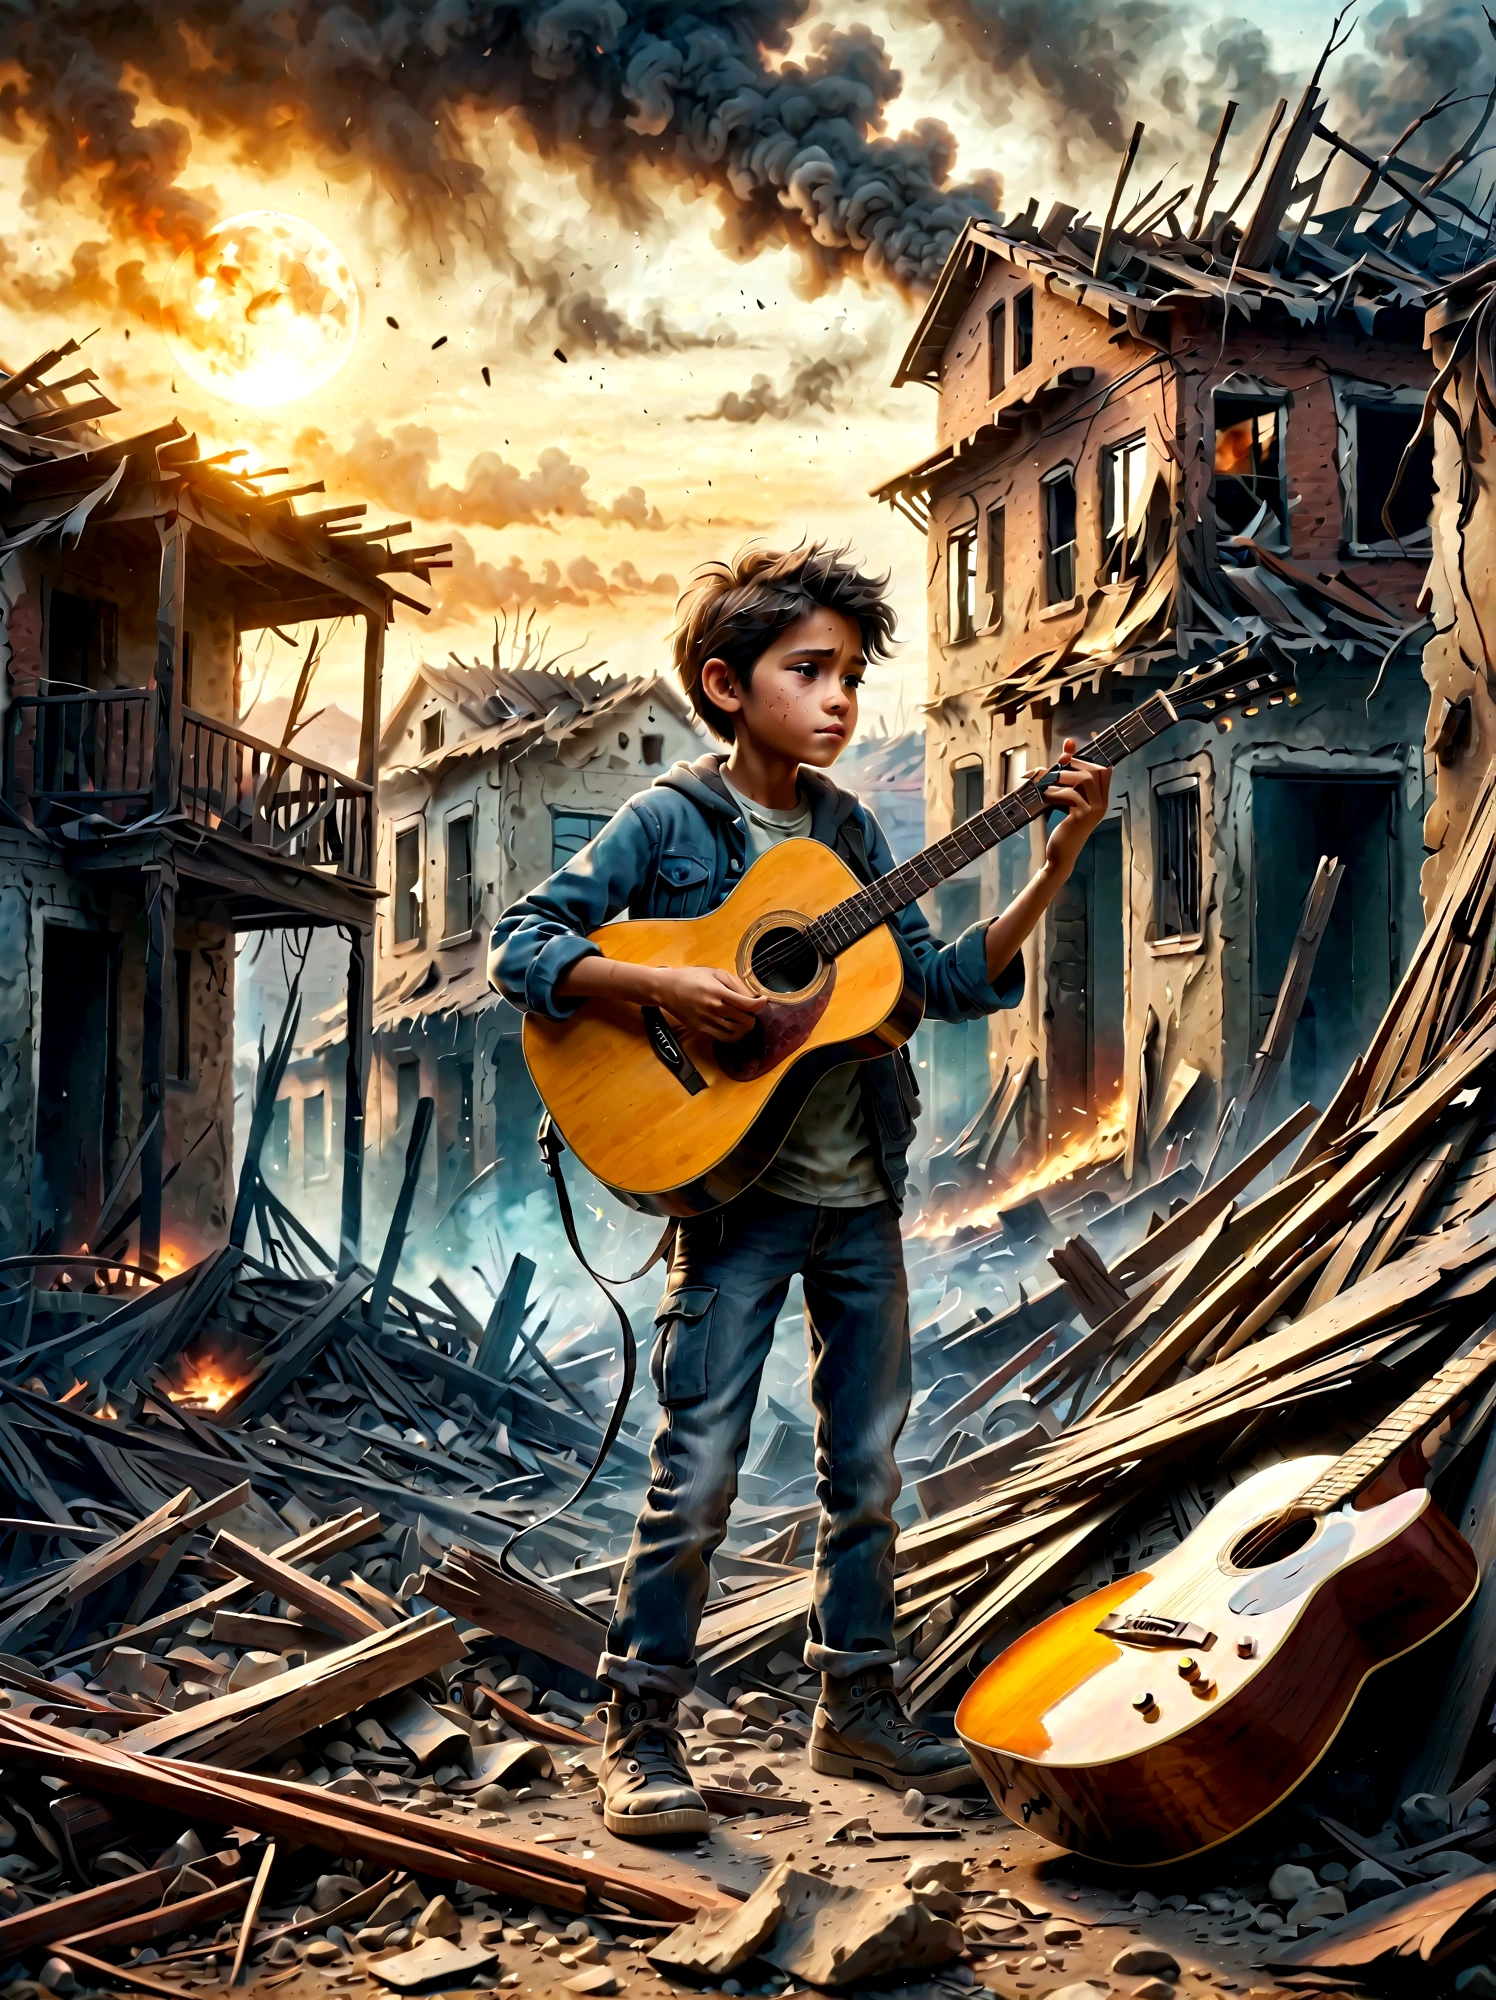 戦争で荒廃した, 煙の廃墟, 子供がギターを弾いている. このシーンは、周囲の荒廃と、 . 遺跡には瓦礫や建物の残骸が溢れている, 背景には煙と火がある. 子供の表情は暗い, 厳しい現実を反映している. 全体的な雰囲気は感動的で感動的である, 落ち着いた色調とドラマチックな照明で、音楽が表現する荒廃と希望のきらめきを強調する.